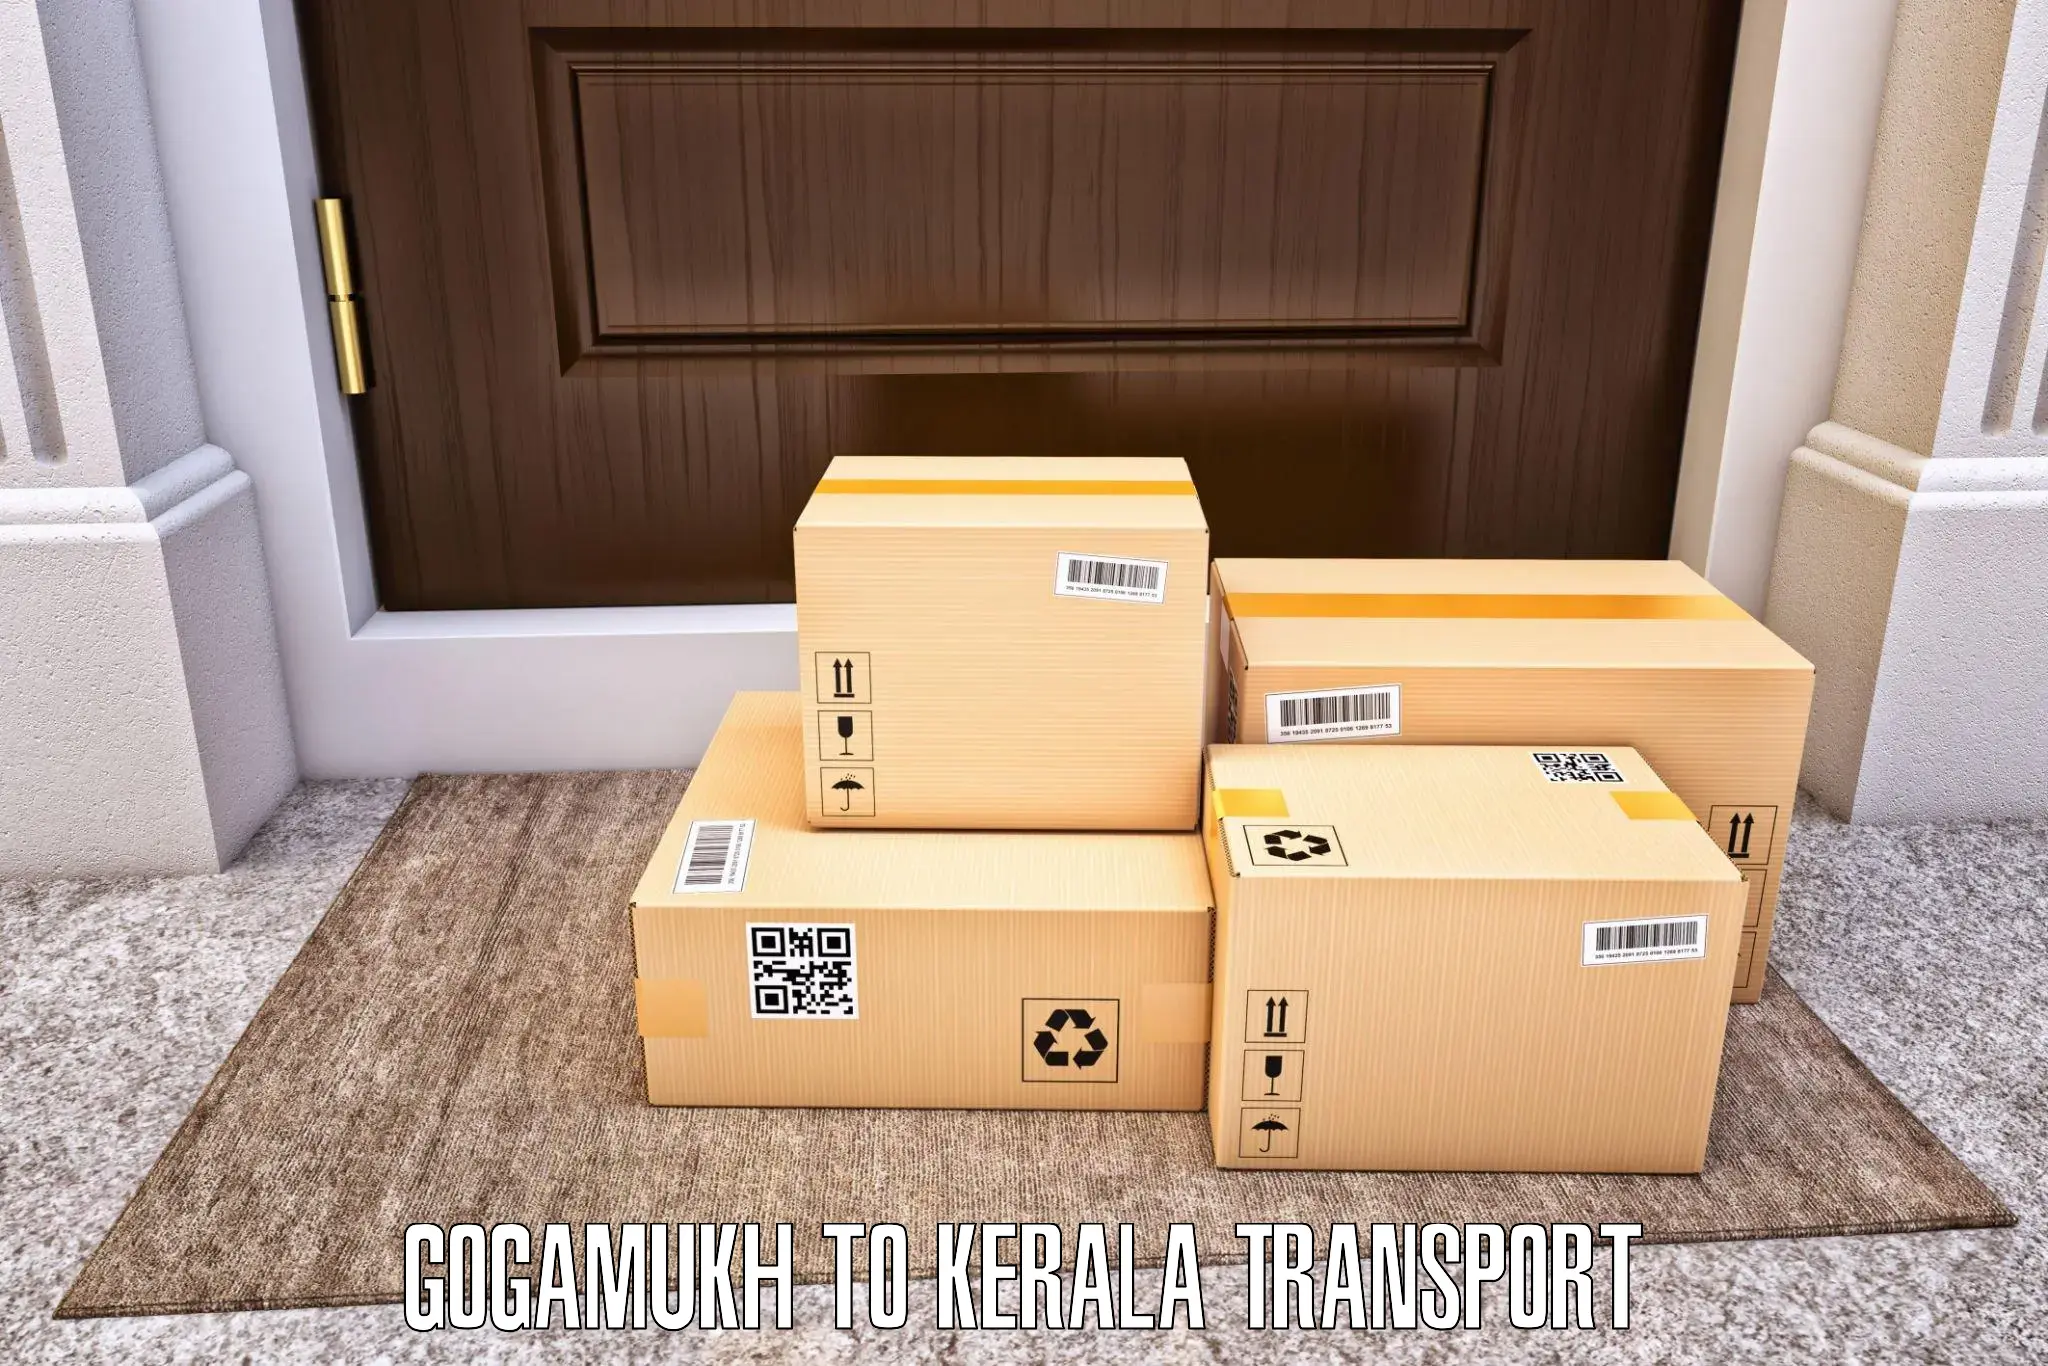 Cargo transport services Gogamukh to Chungatra